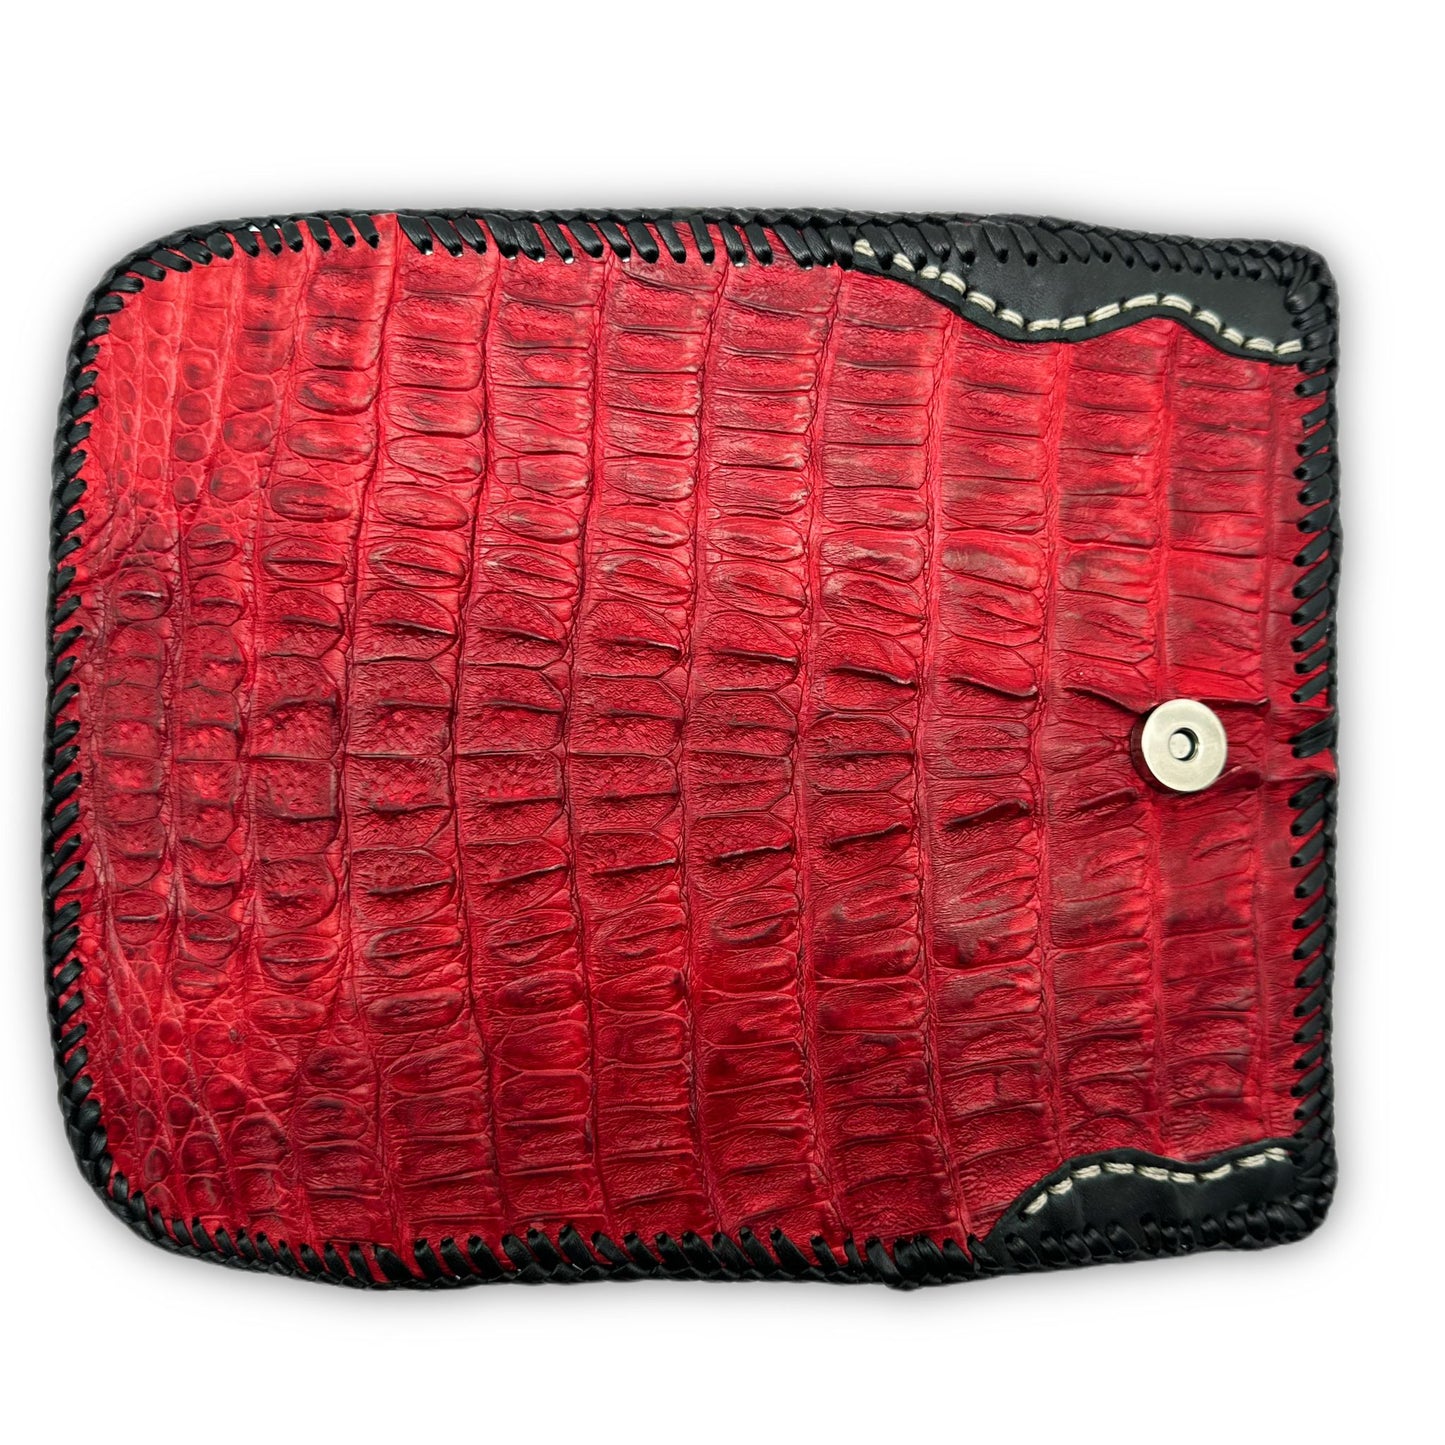 Trifecta Alligator Clutch in Carmine Red